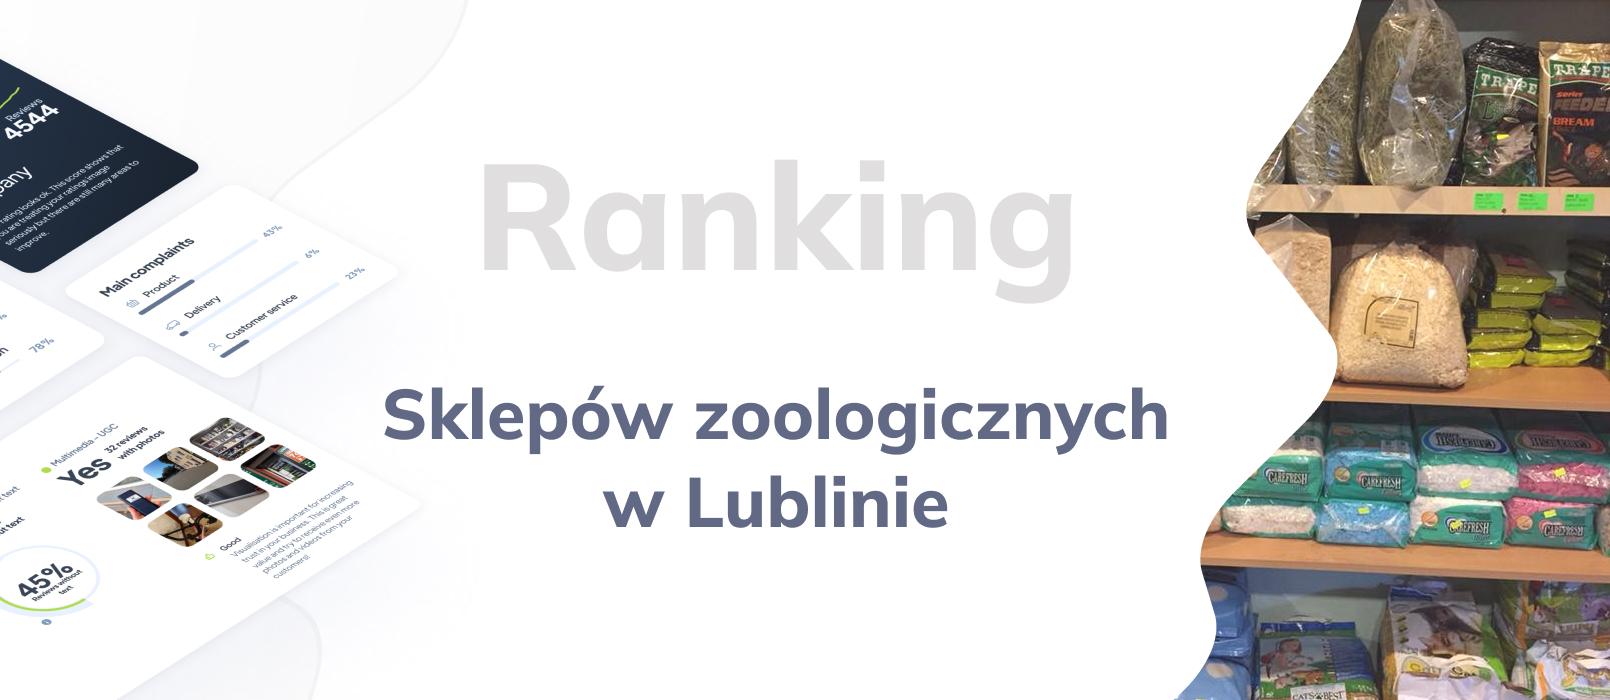 Sklep zoologiczny w Lublinie - ranking TOP 10